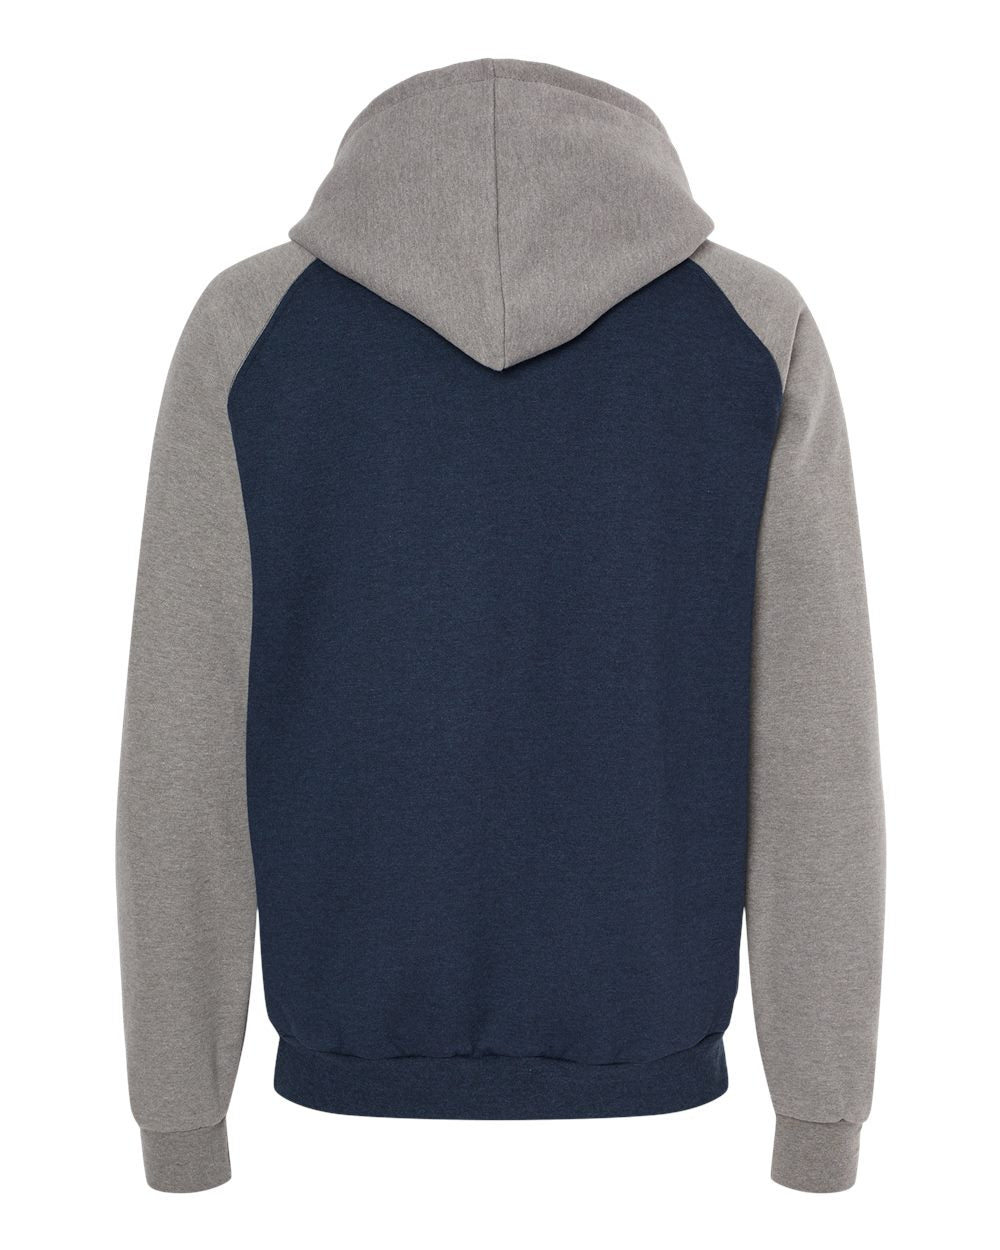 King Fashion Fleece Raglan Hooded Sweatshirt KF4042 #color_Heather Navy/ Grey Heather